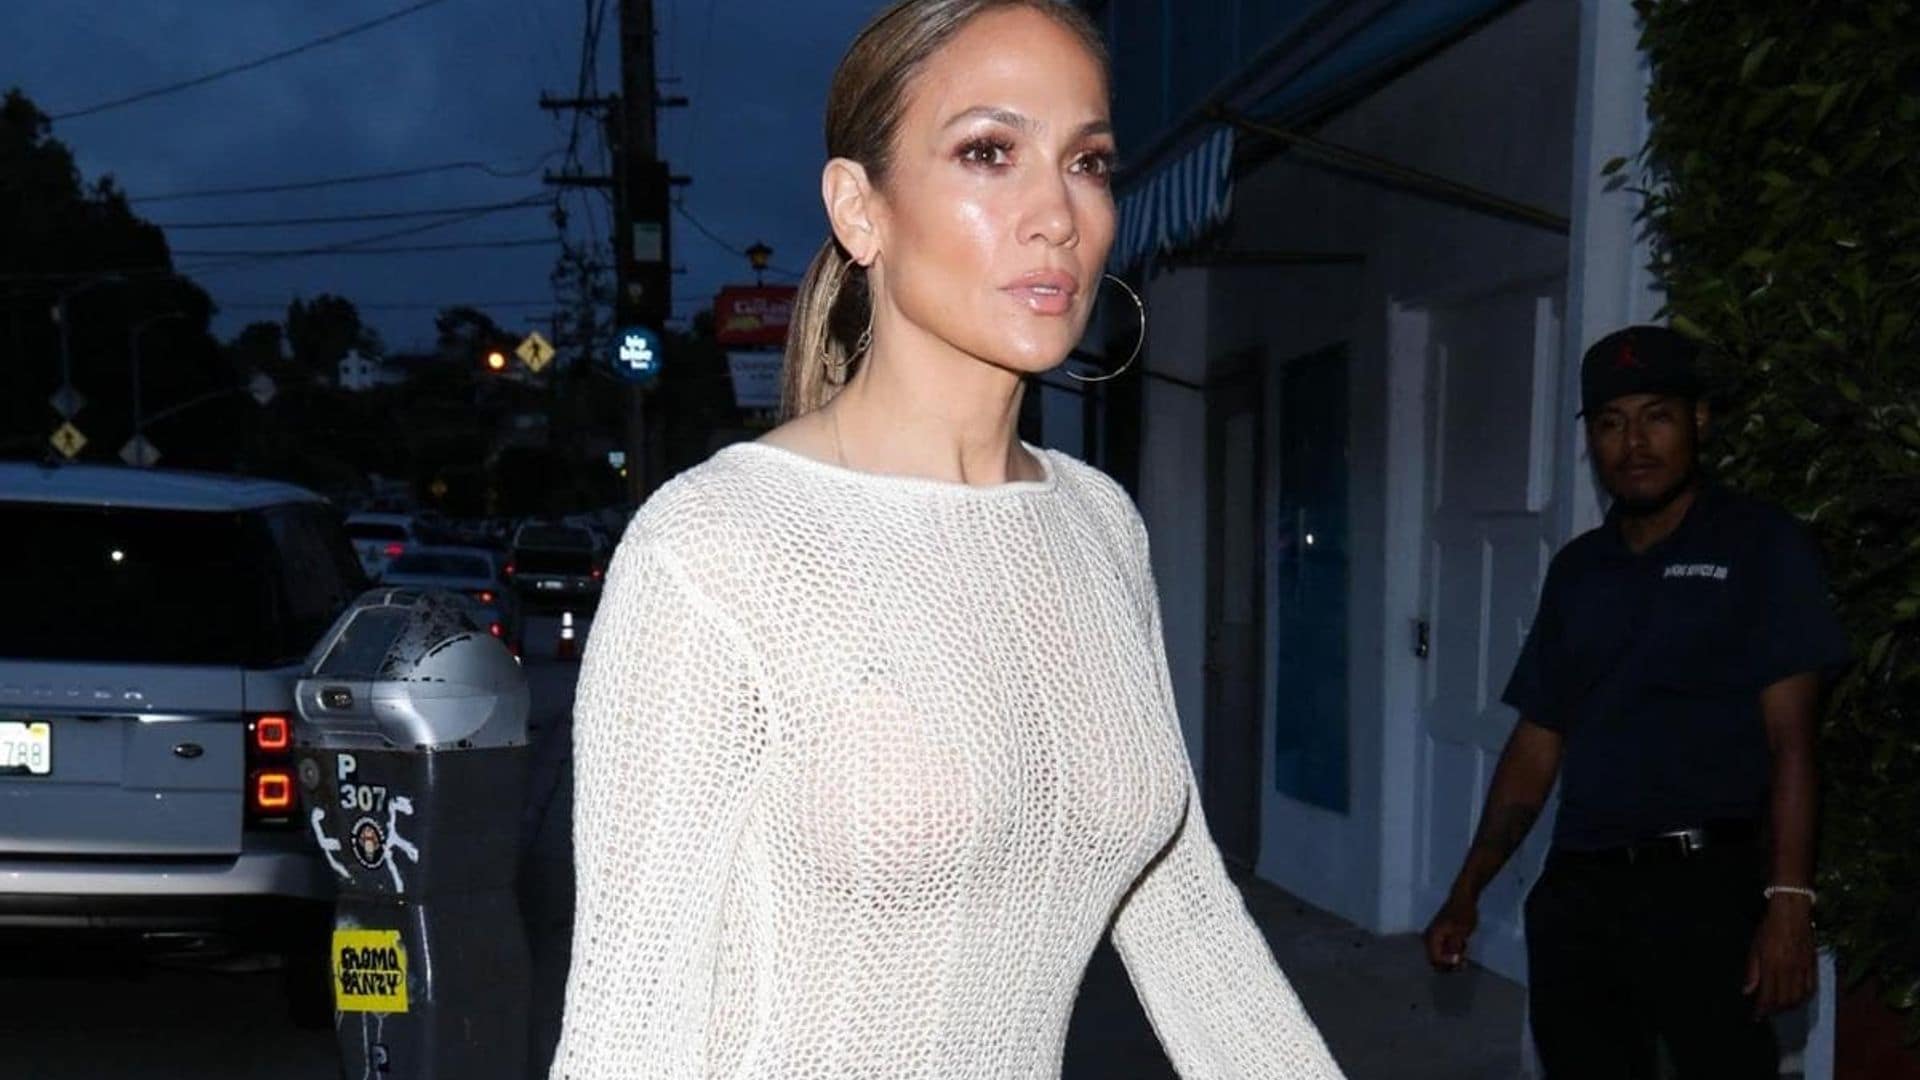 Jennifer Lopez wears figure-hugging dress in solo dinner amid Ben Affleck divorce rumors